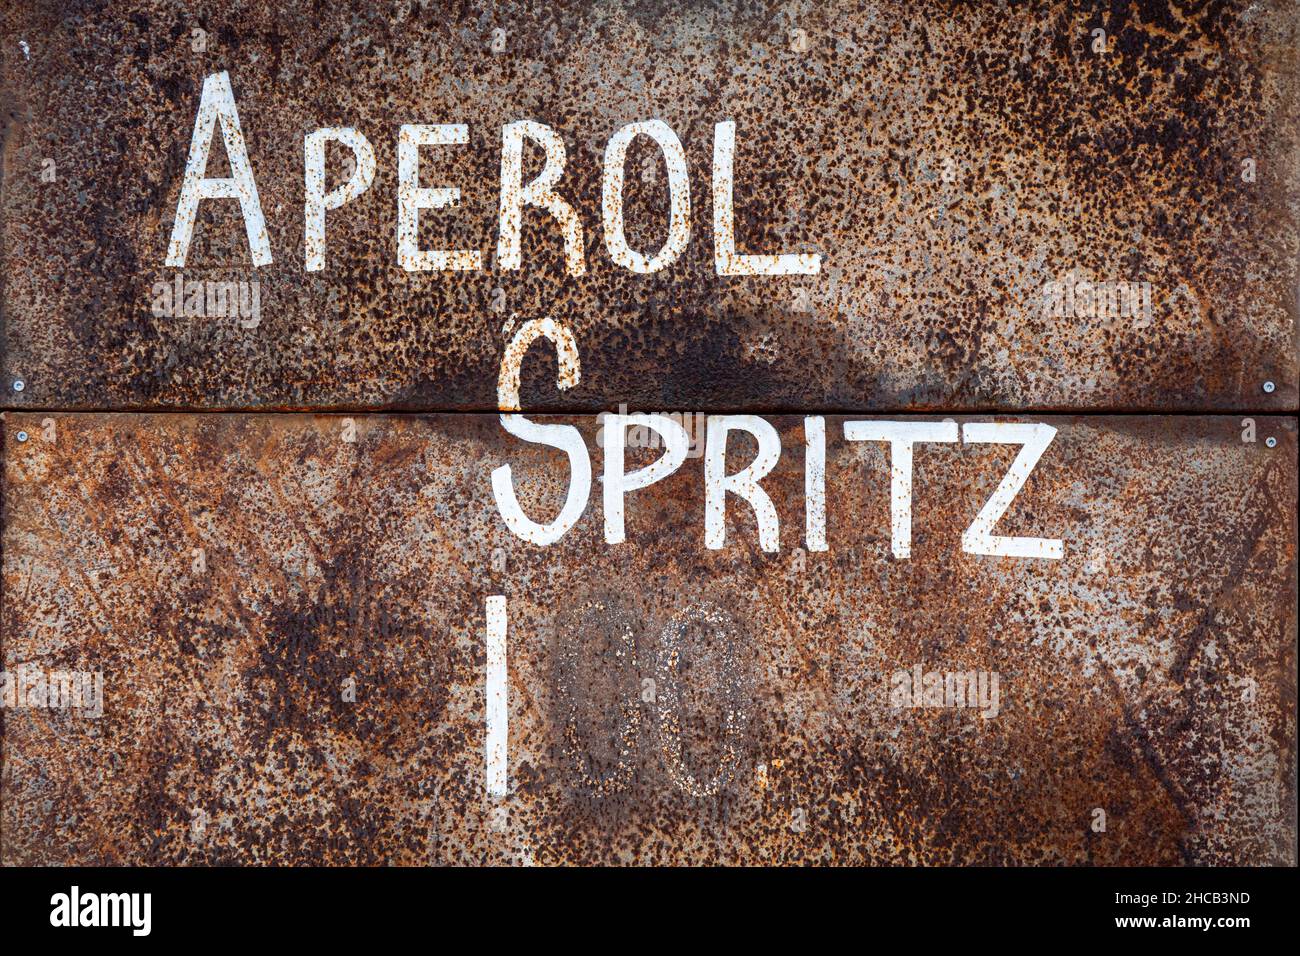 Prezzo Aperol Spritz. Testo bianco su una superficie arrugginita. Foto Stock